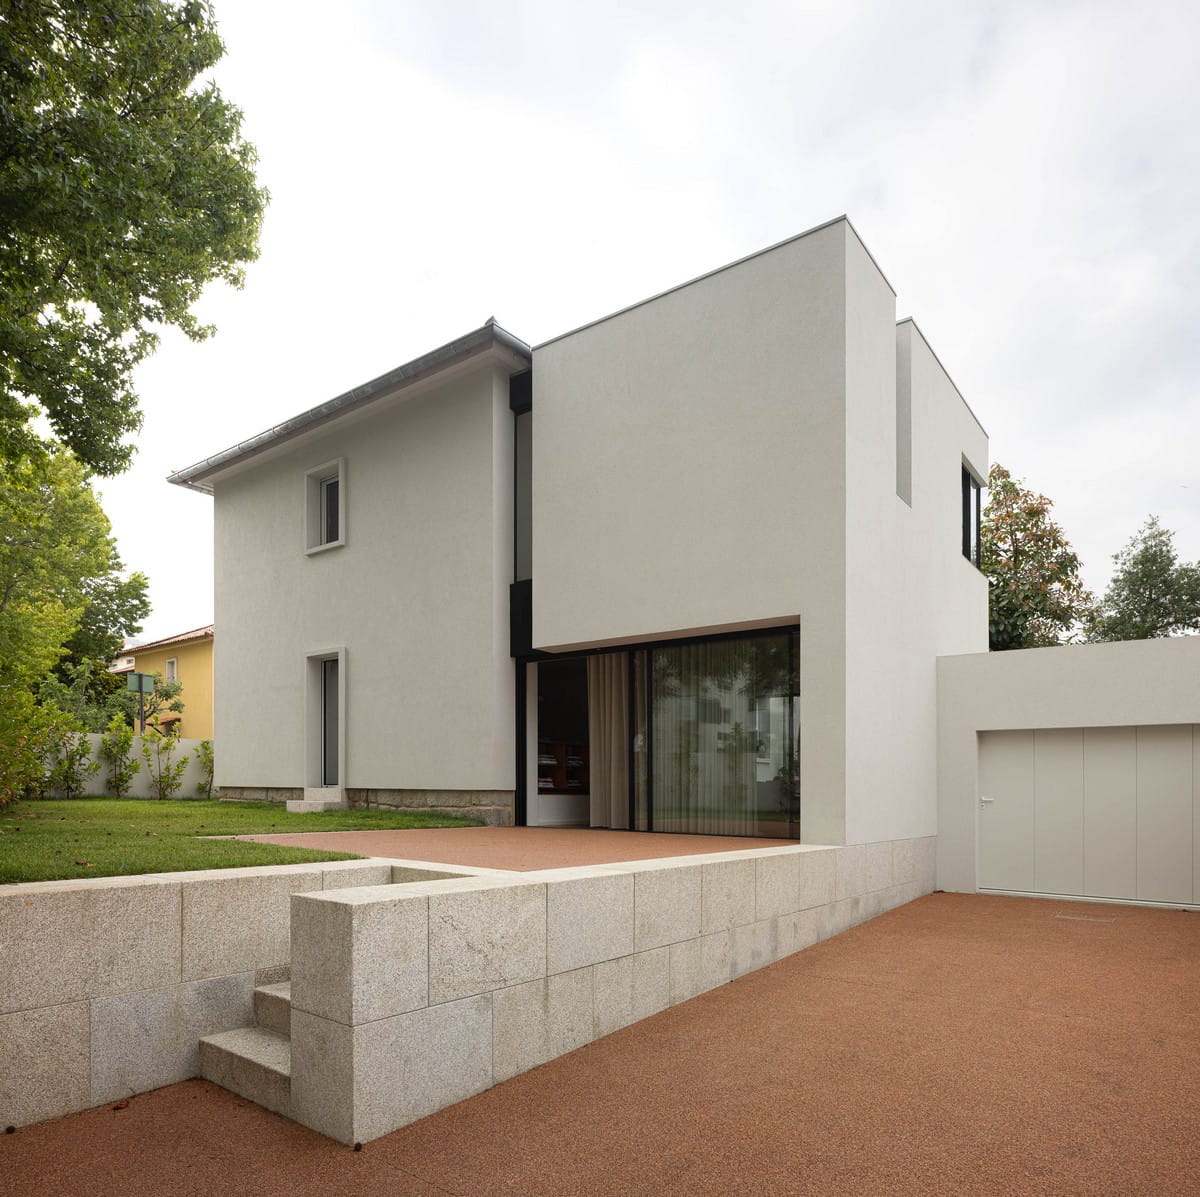 IMLA House / Luppa Architects